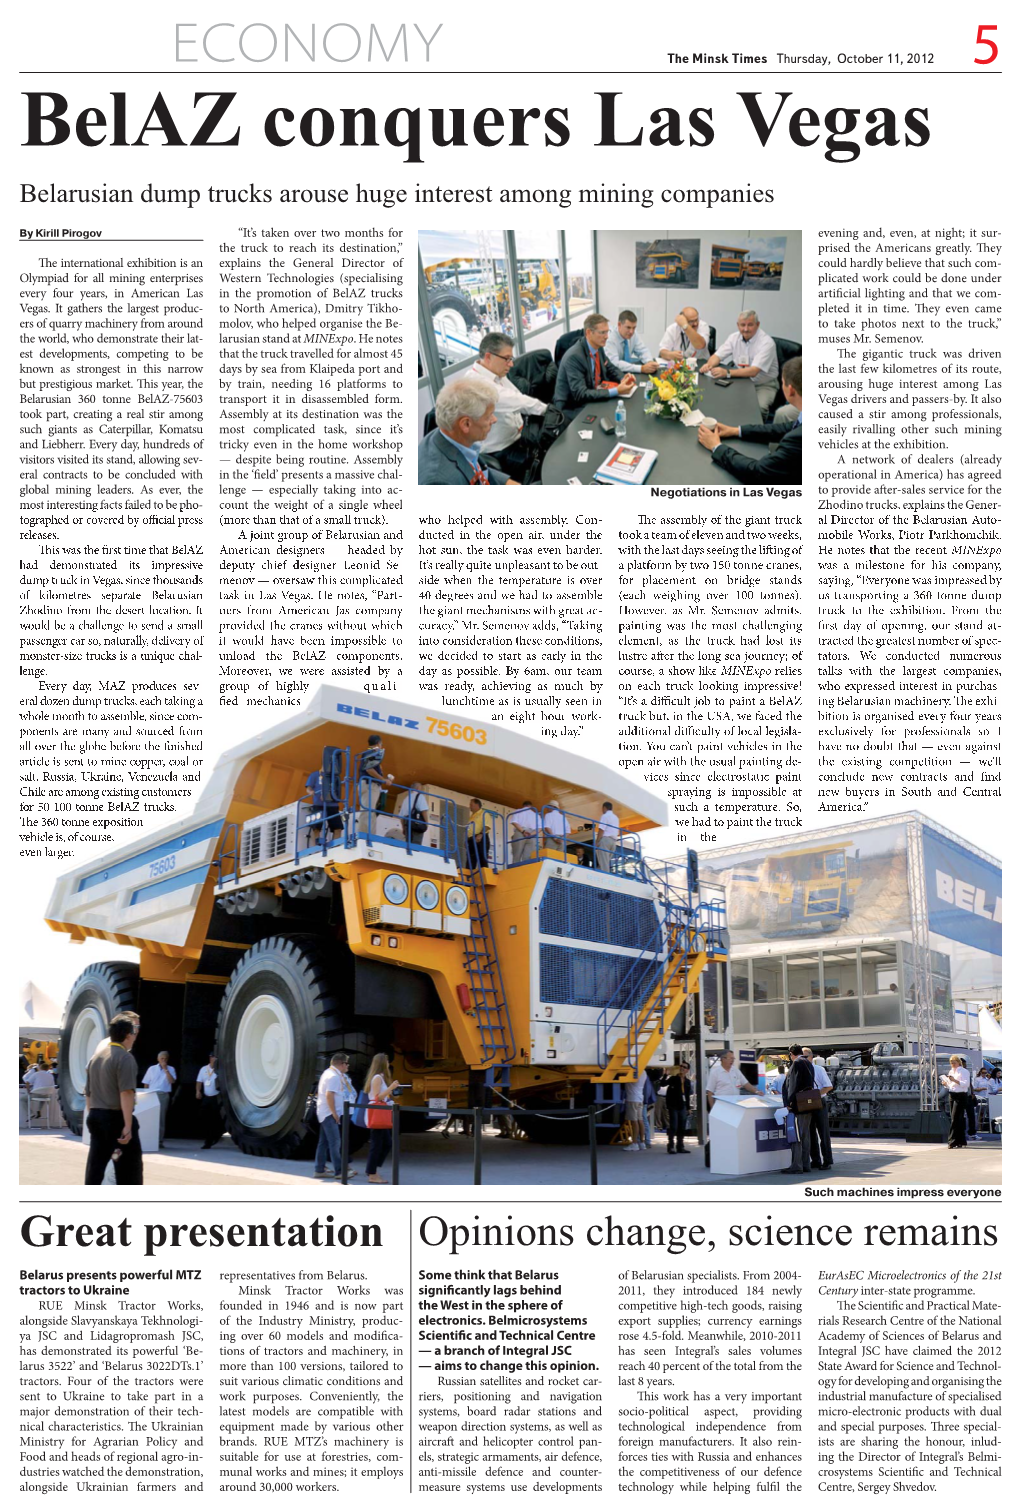 Belaz Conquers Las Vegas Belarusian Dump Trucks Arouse Huge Interest Among Mining Companies